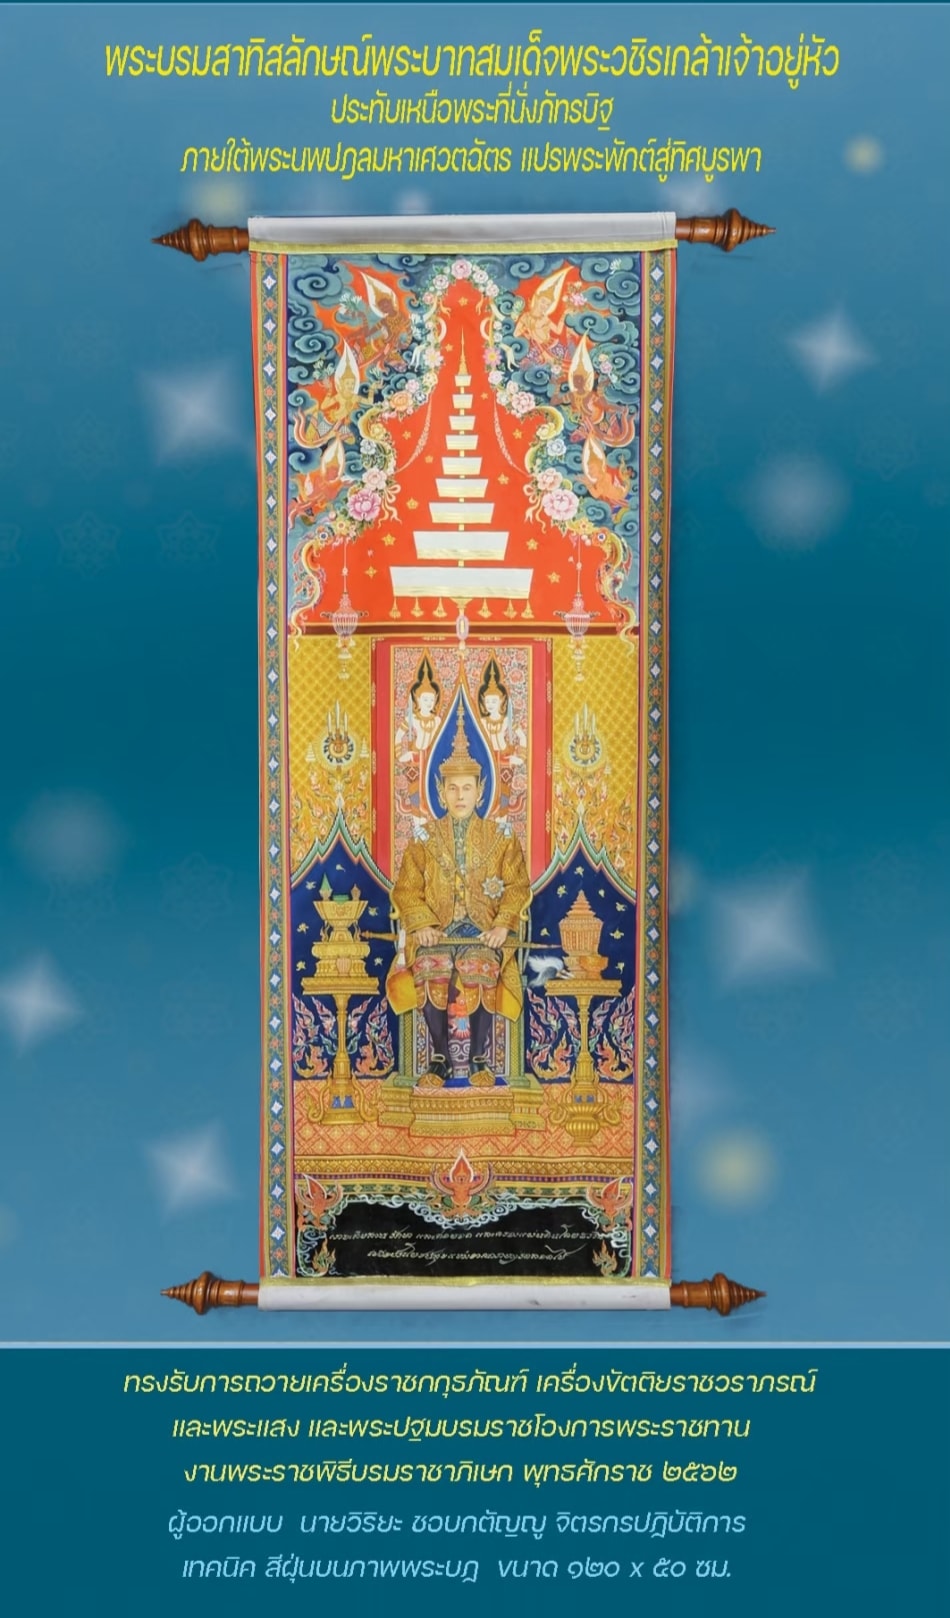 ภาพพระบรมสาทิสลักษณ์ พระบาทสมเด็จพระเจ้าอยู่หัว ในงานพระราชพิธีบรมราชาภิเษก พุทธศักราช ๒๕๖๒